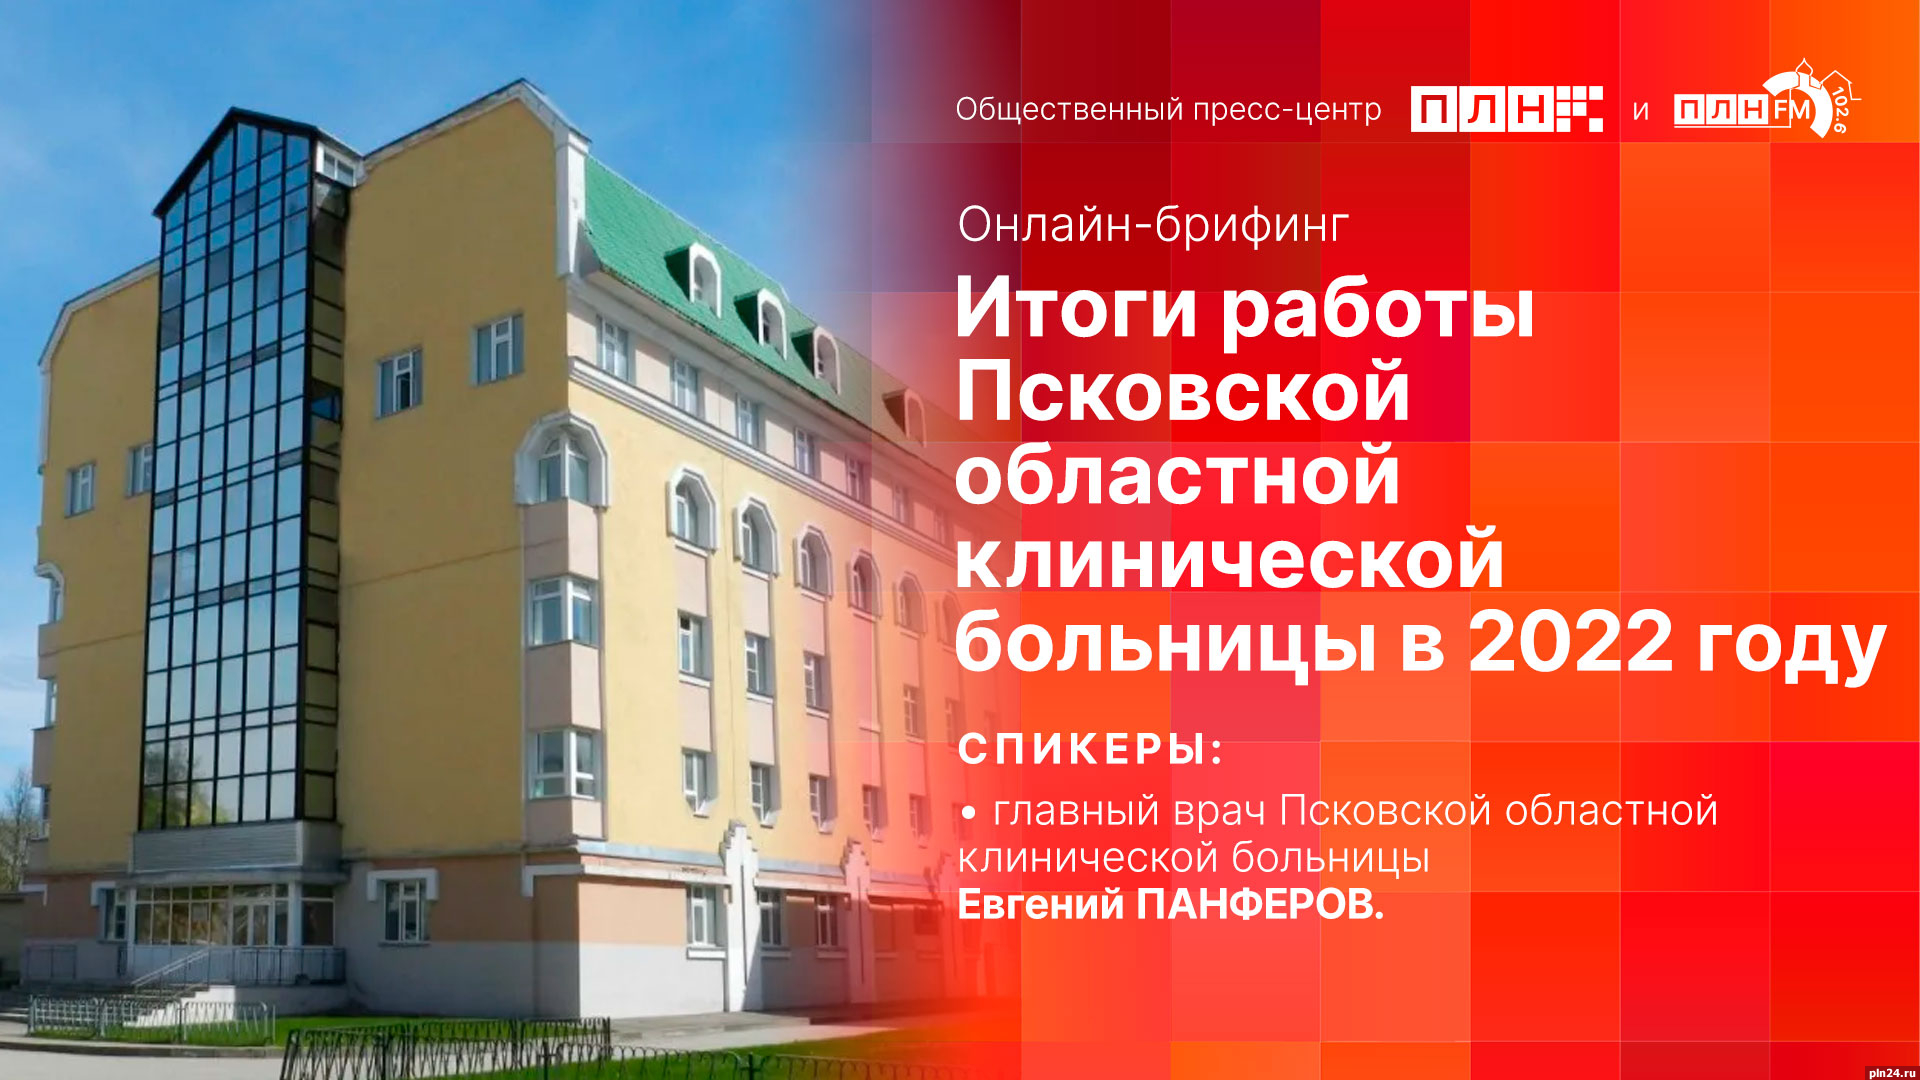 Главврач областной больницы Евгений Панферов примет участие в брифинге в пресс-центре ПЛН